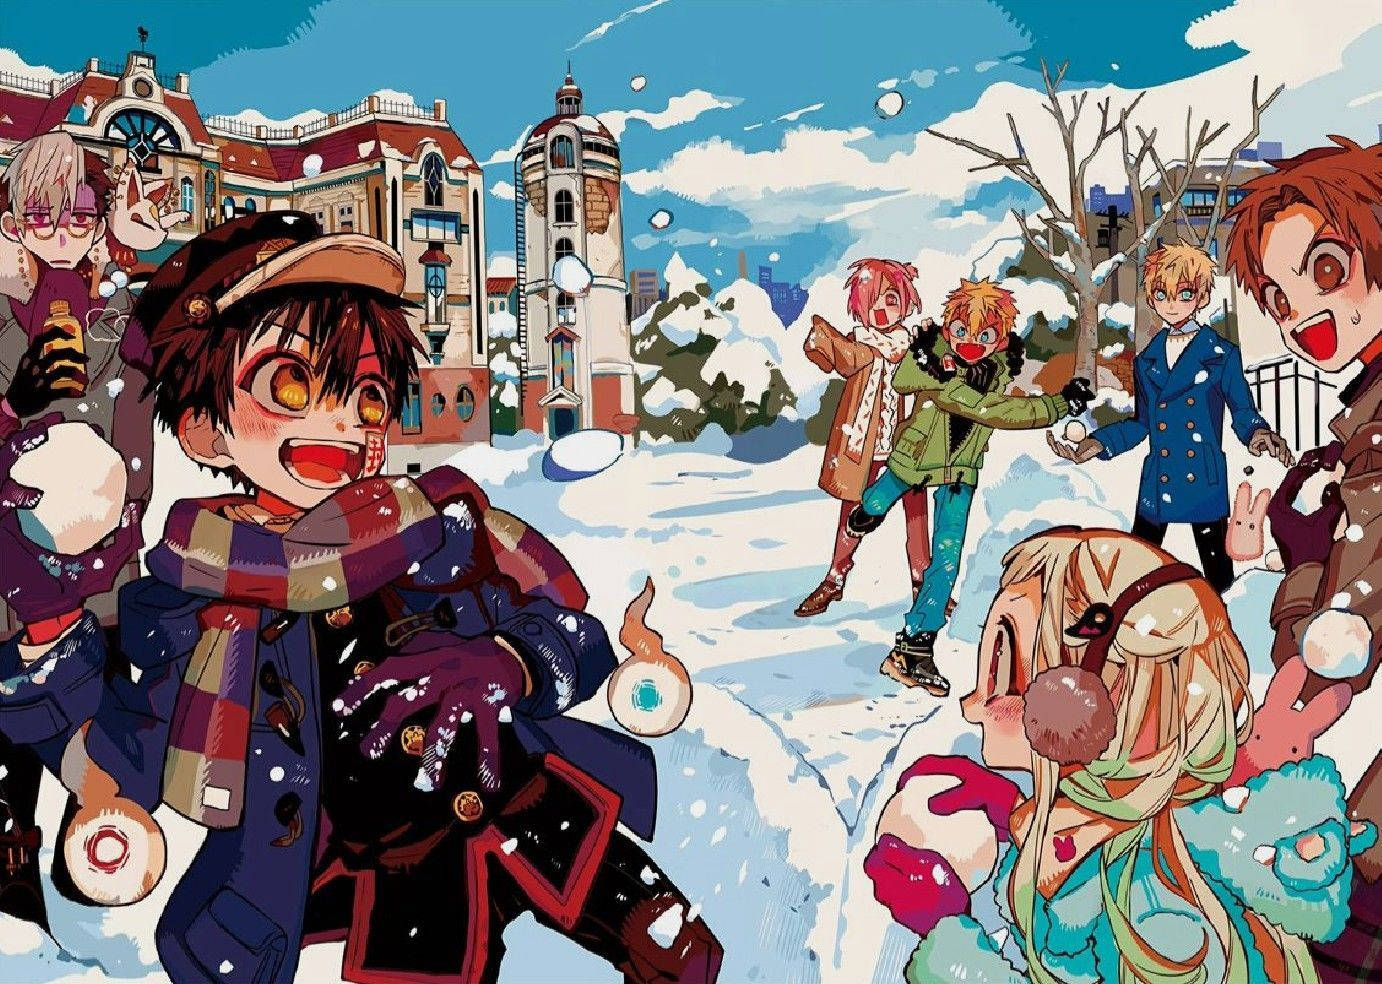 Einegruppe Von Menschen Spielt Im Schnee. Wallpaper